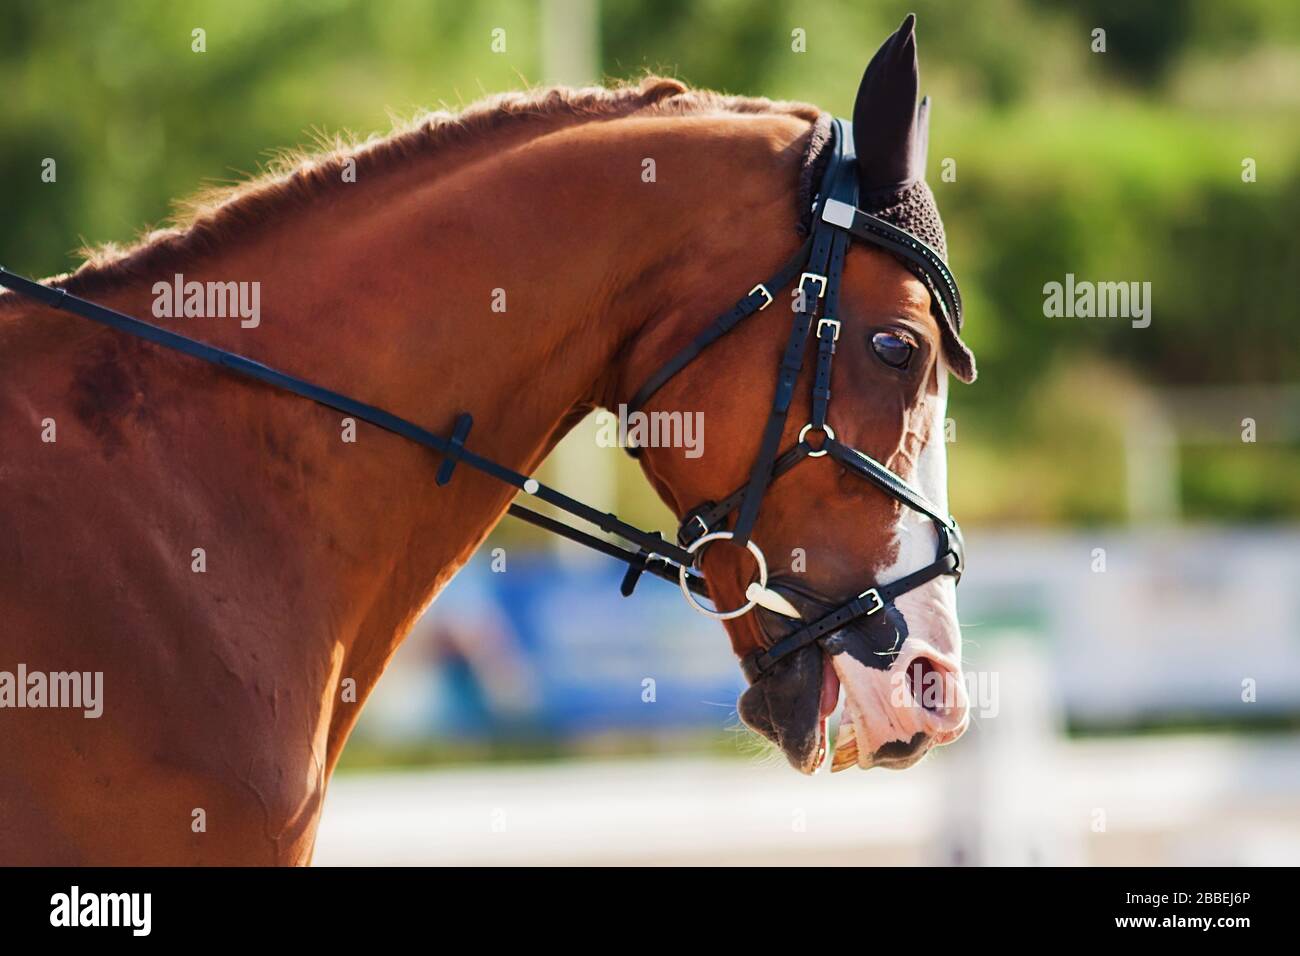 Portrait eines Sorrels verängstigte Rennpferd mit weiten Augen und verdünnt gebratenen Nasenlöchern an einem sonnigen Tag bei einer Sportveranstaltung. Stockfoto